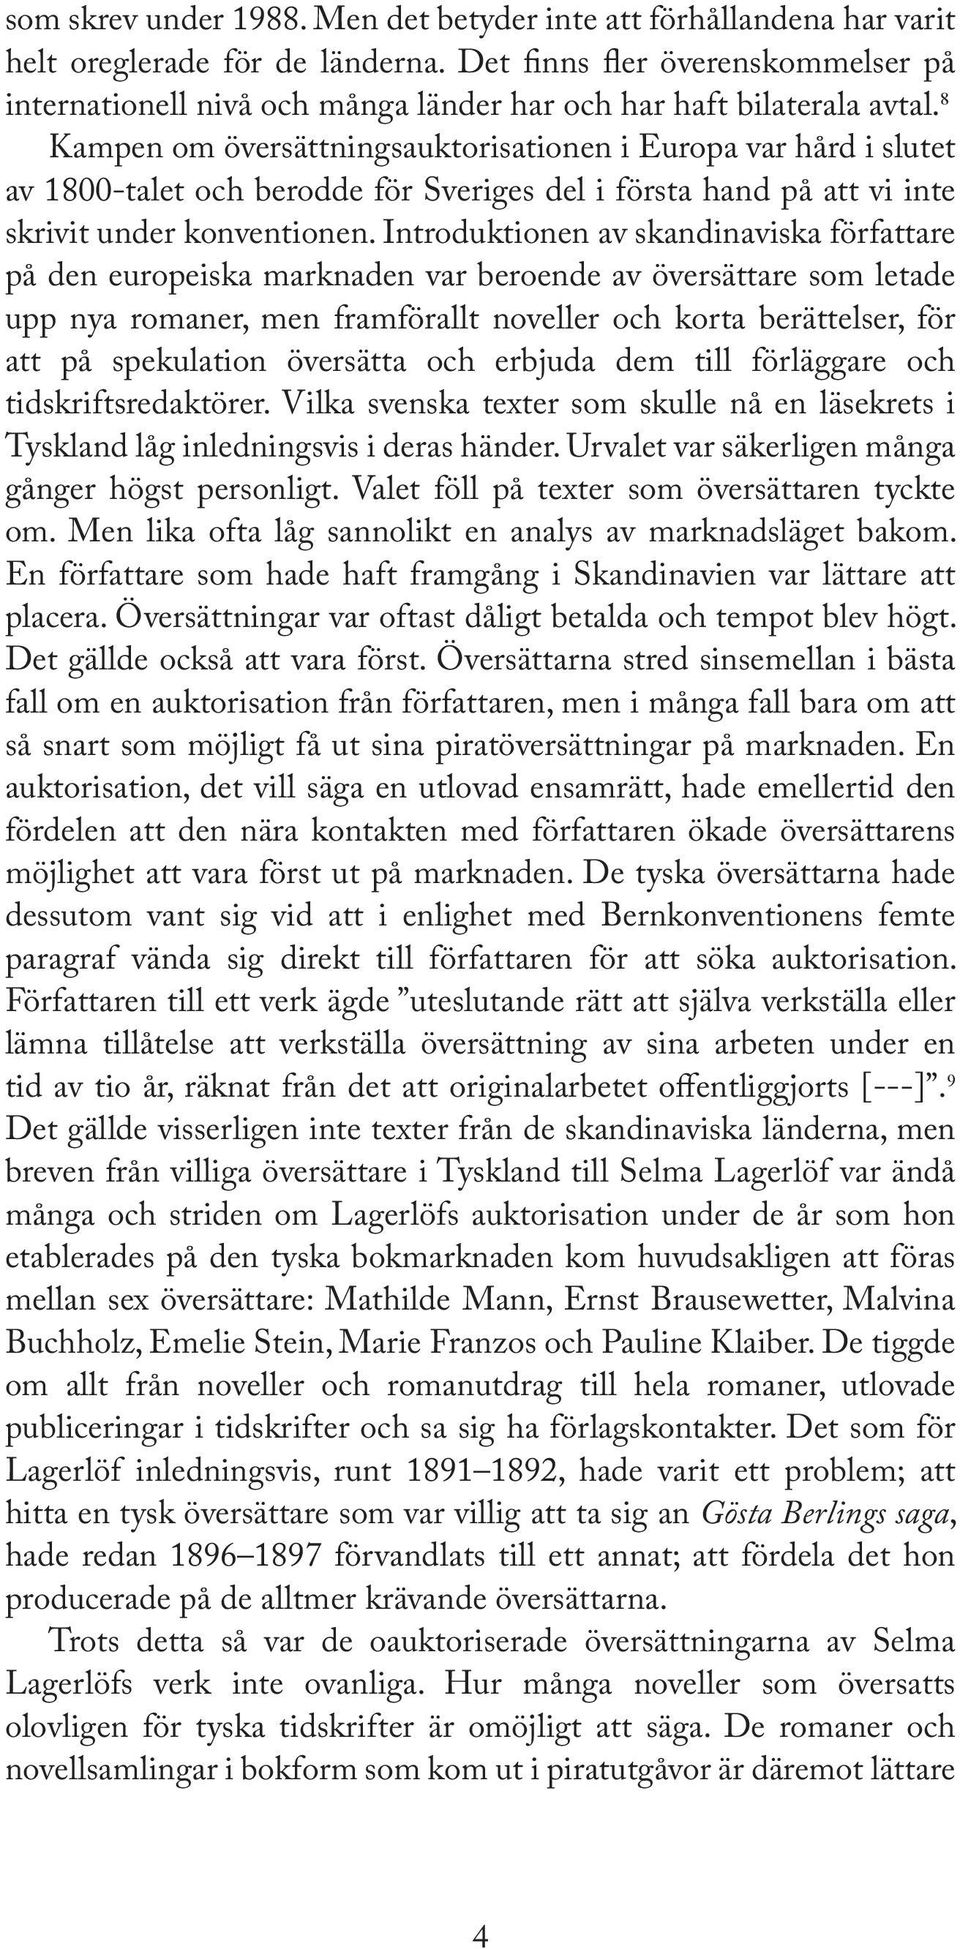 8 Kampen om översättningsauktorisationen i Europa var hård i slutet av 1800-talet och berodde för Sveriges del i första hand på att vi inte skrivit under konventionen.